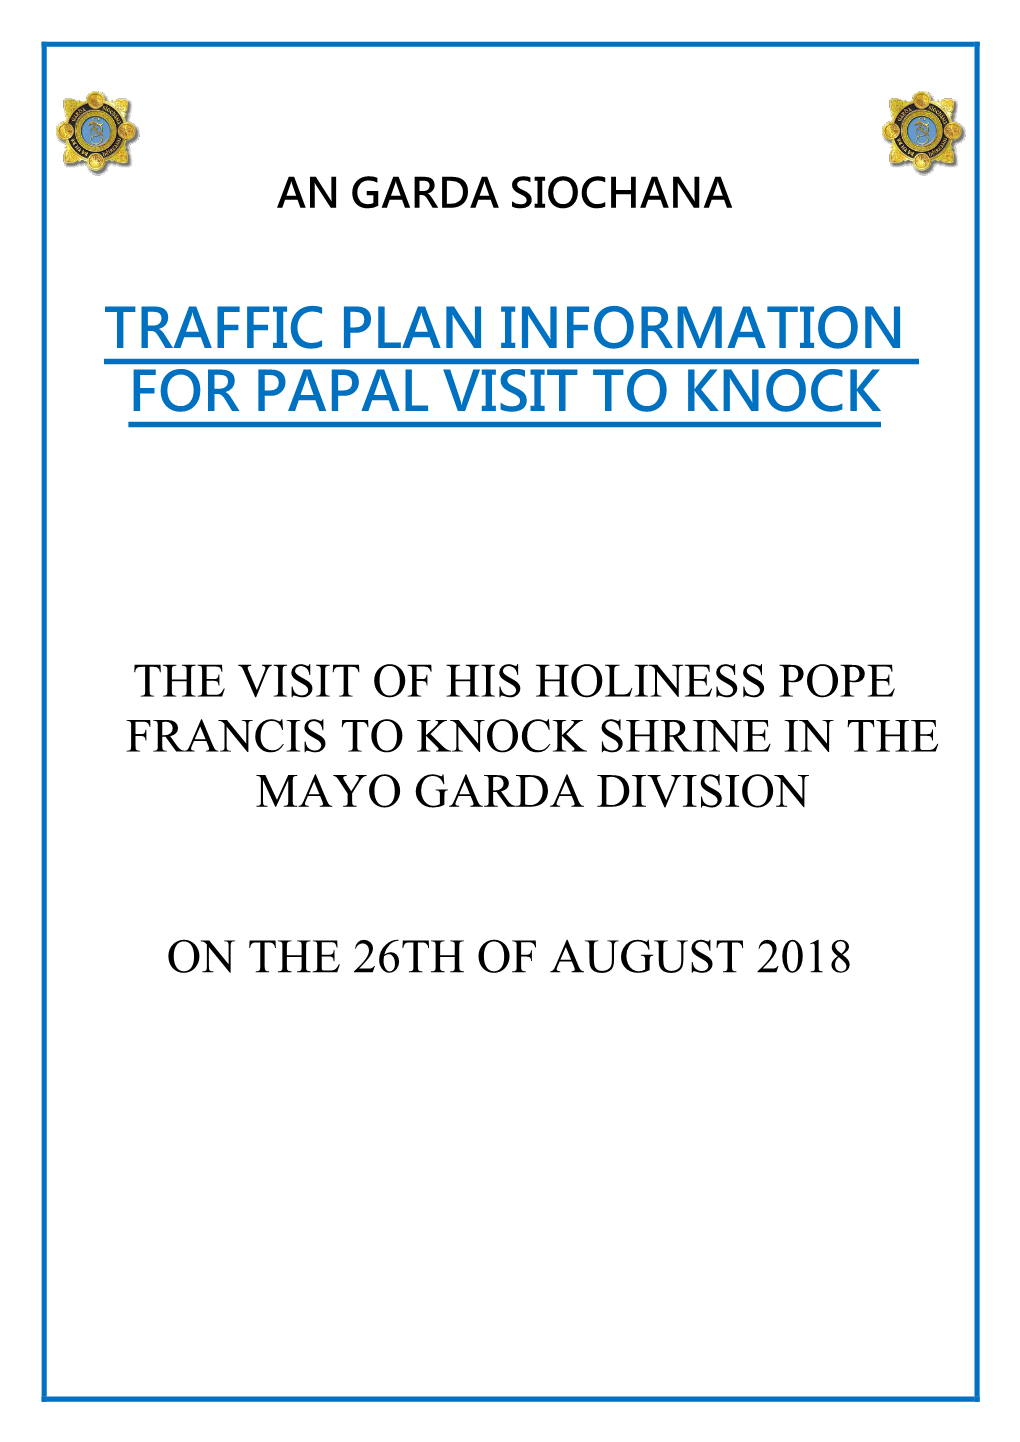 Traffic Plan Information for Papal Visit to Knock